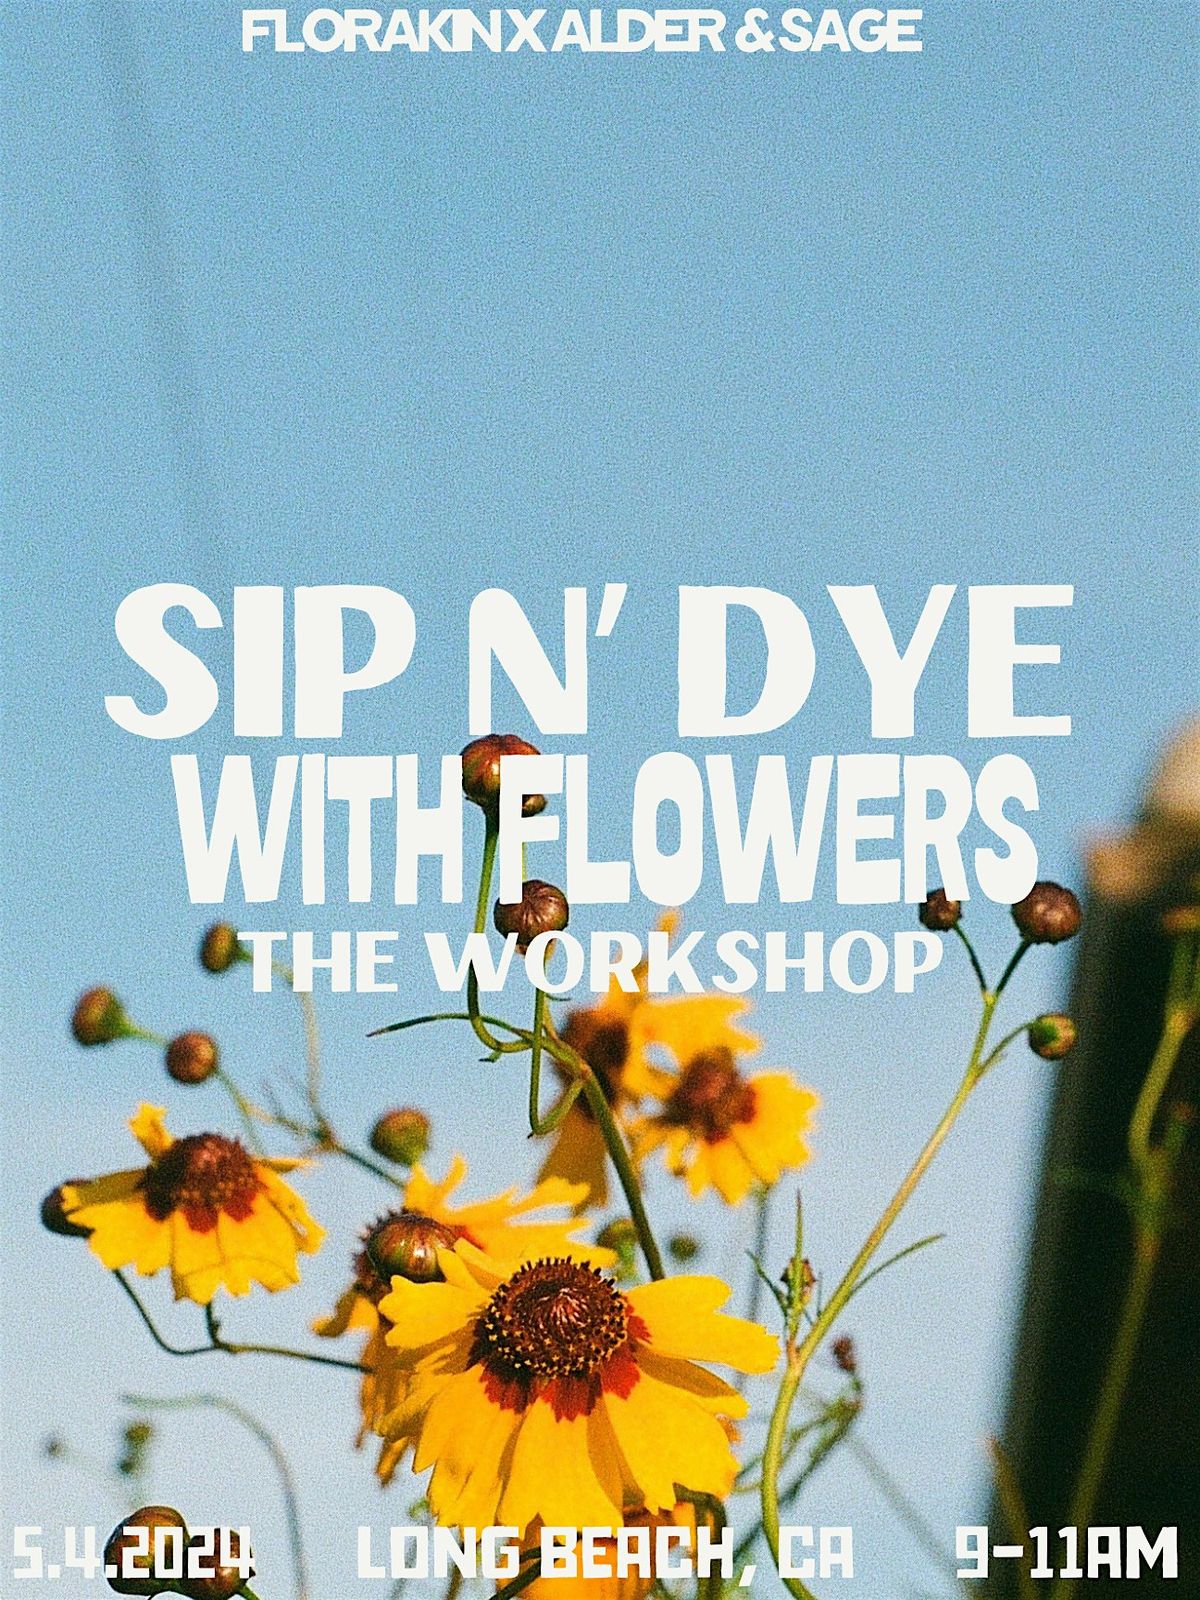 sip n' dye with flowers @ alder & sage